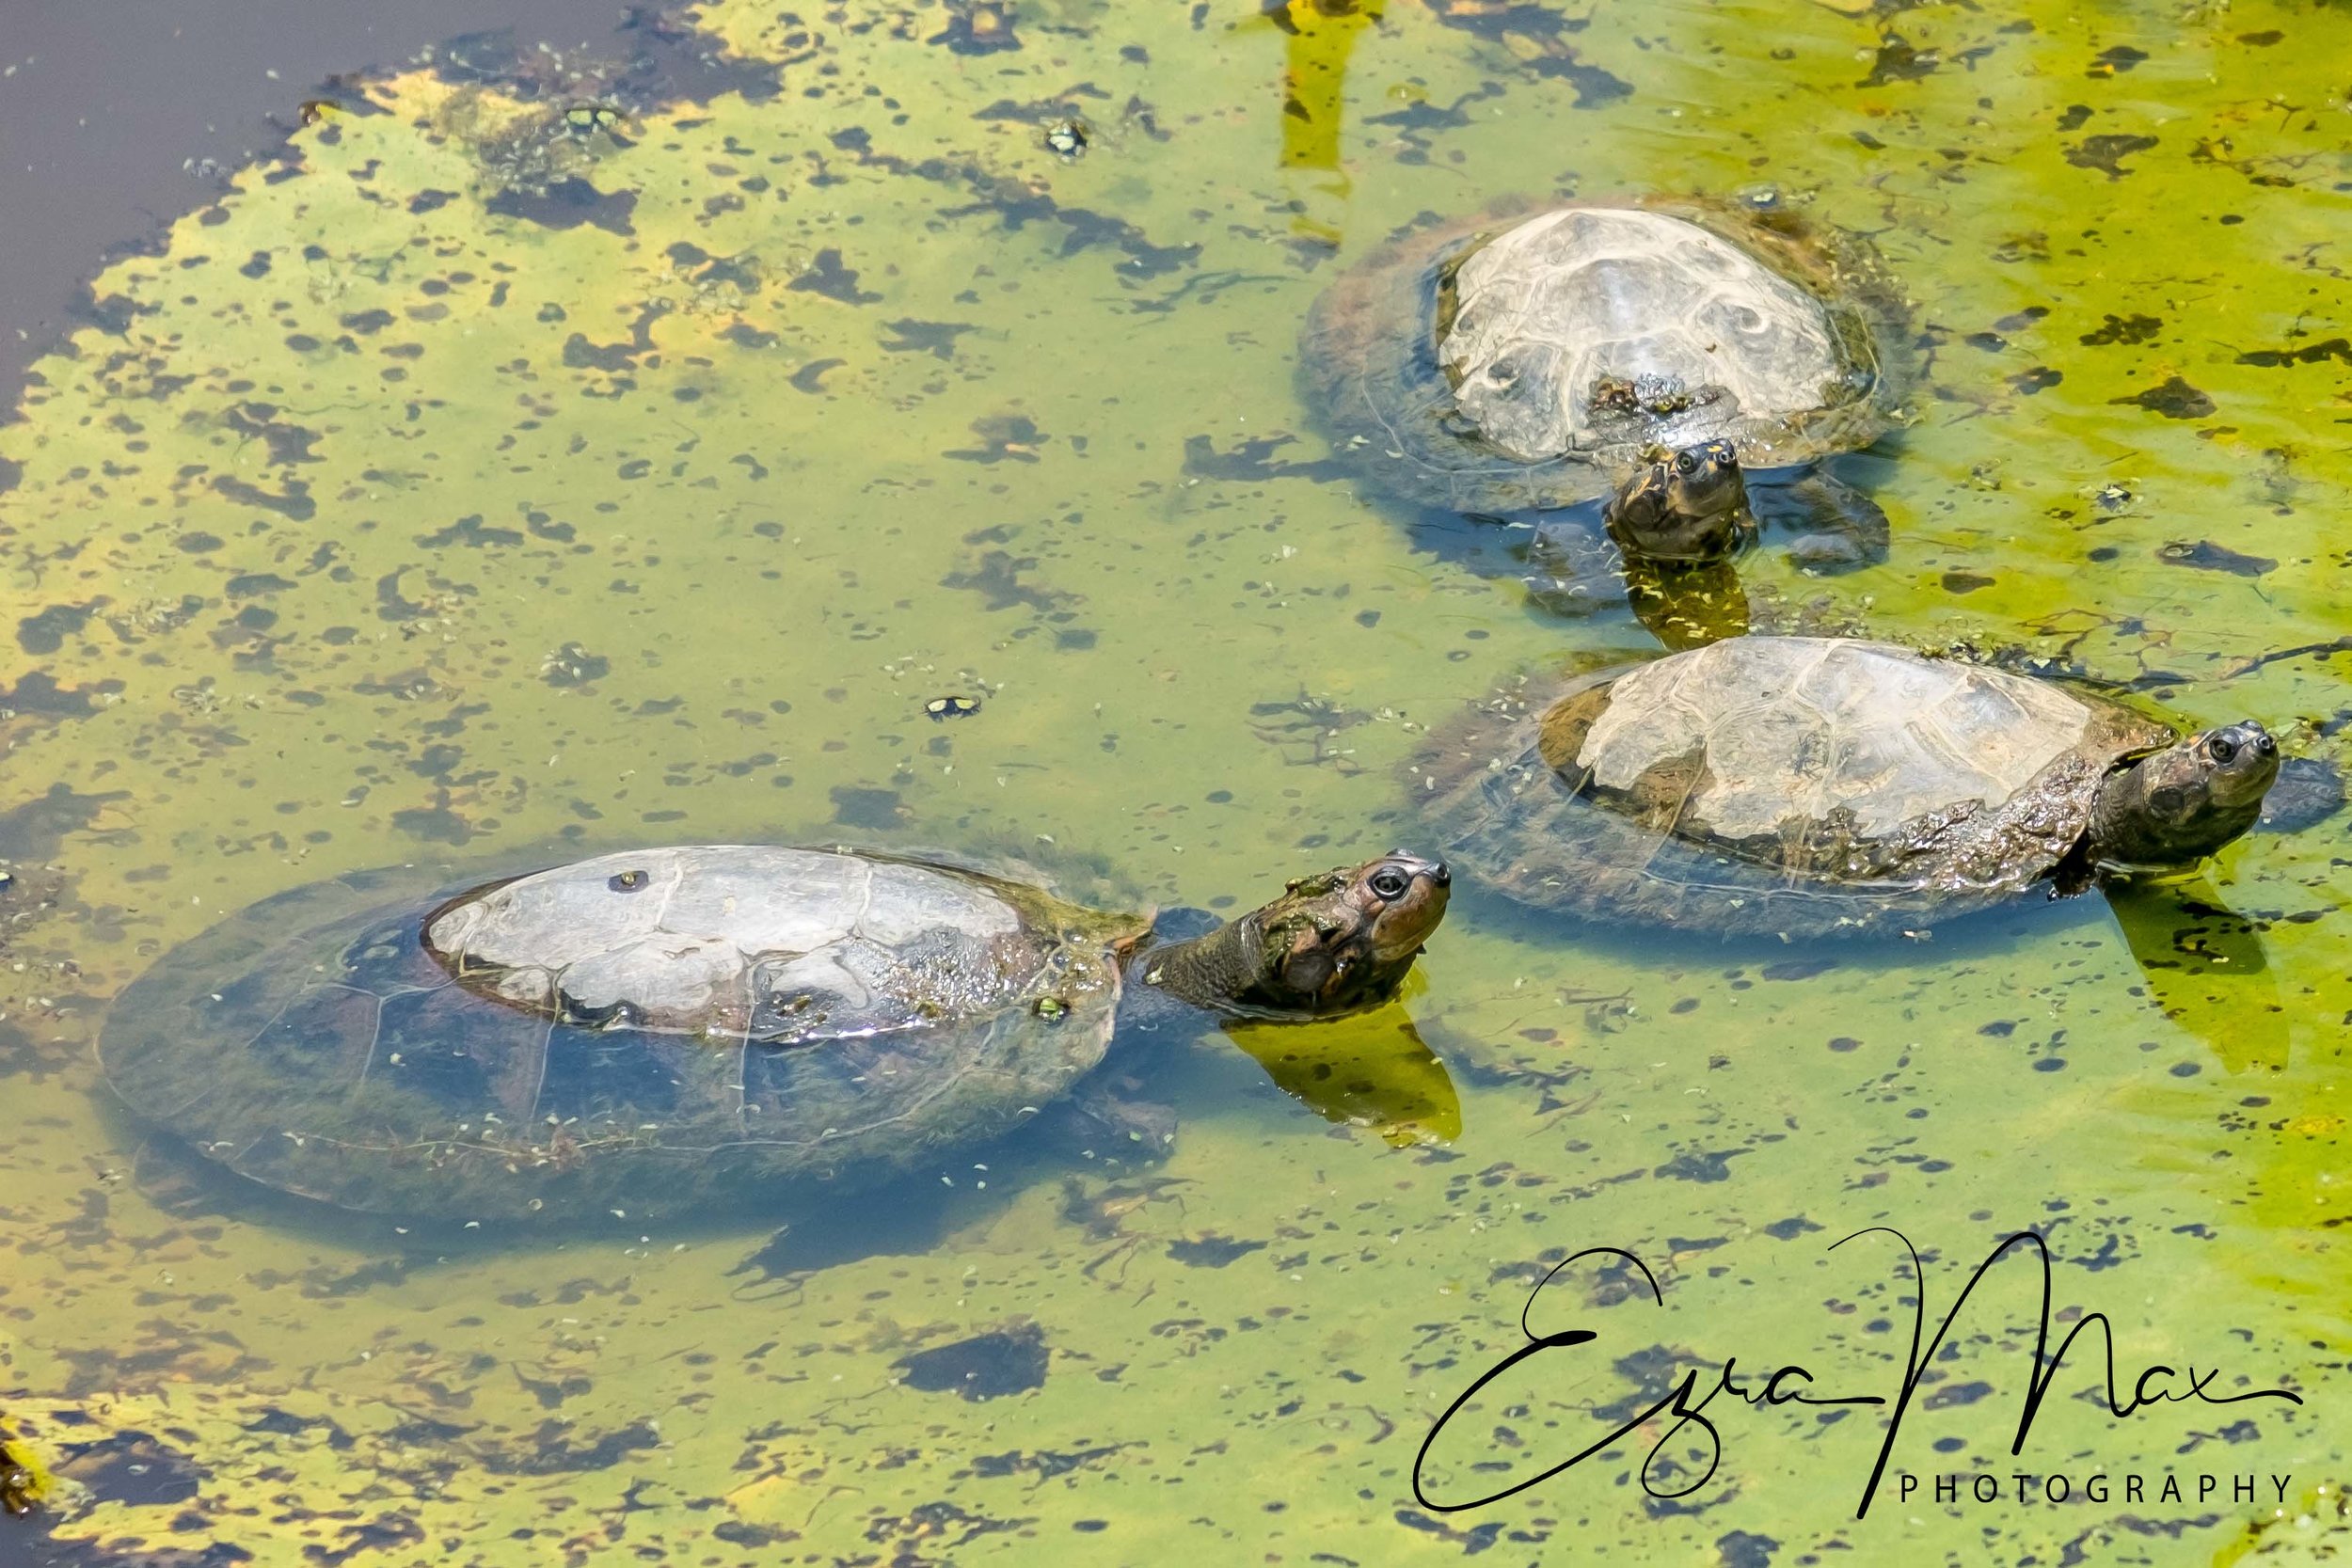 Turtles on a lilypad